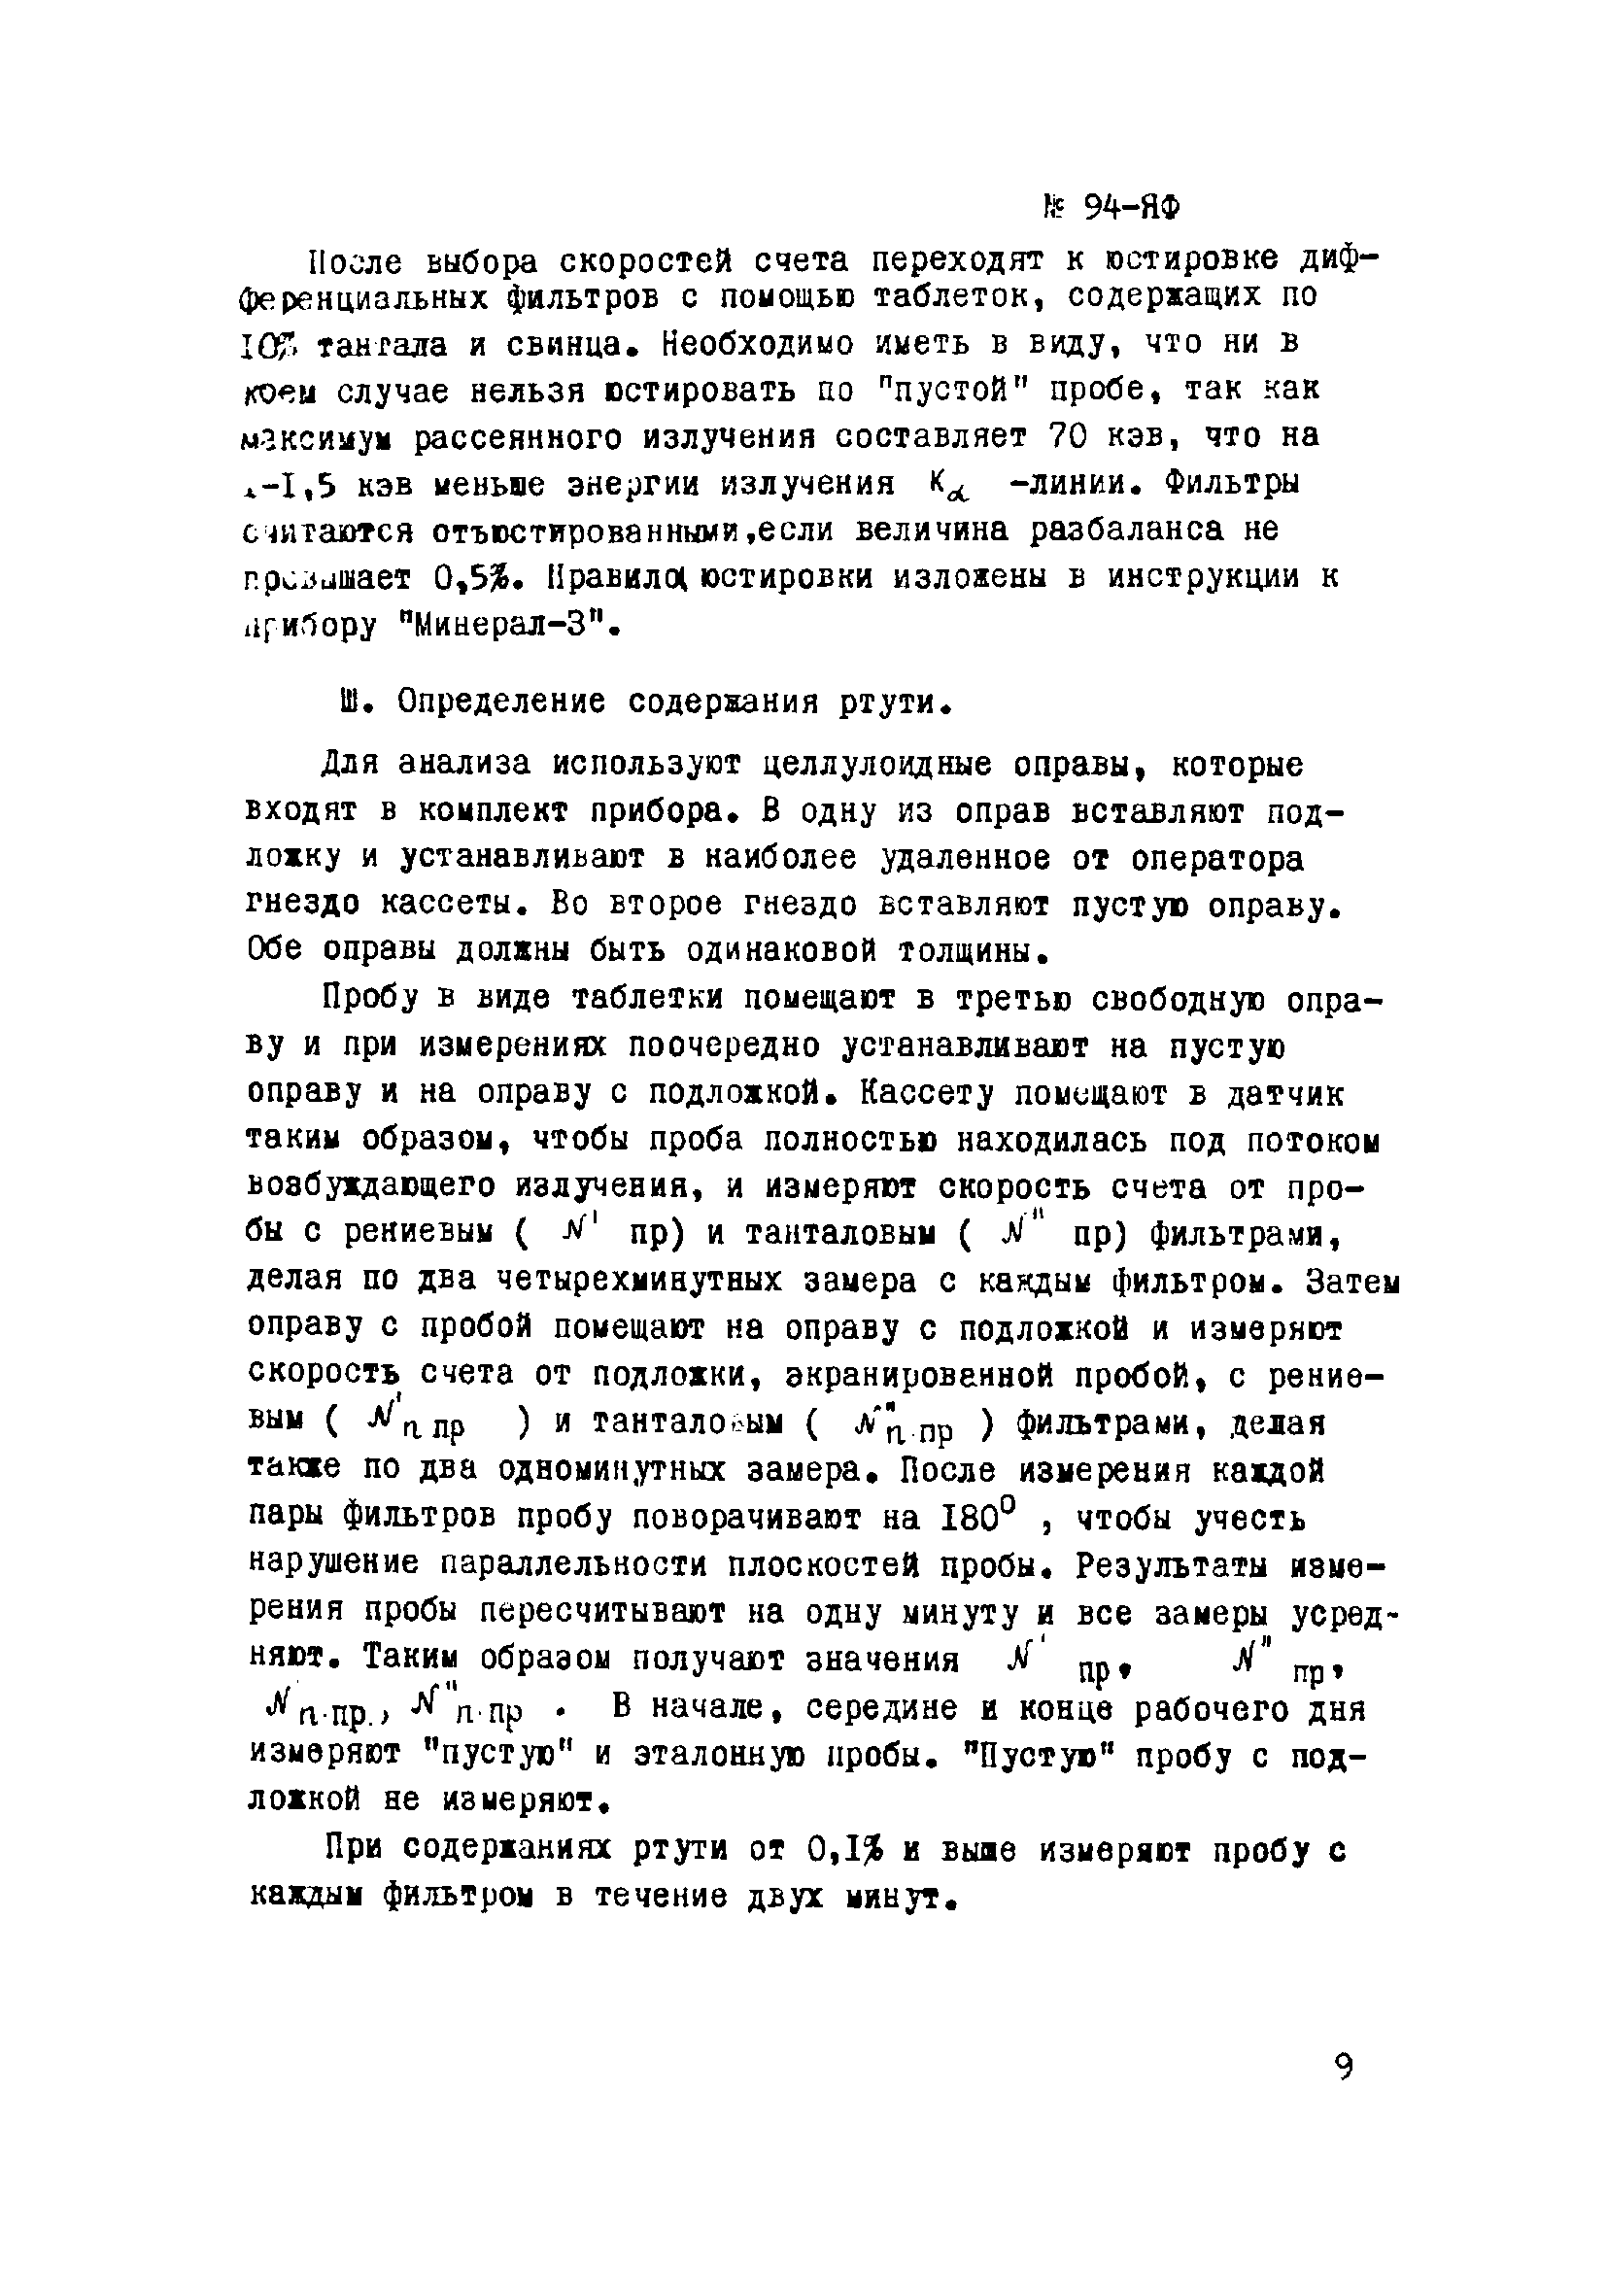 Инструкция НСАМ 94-ЯФ